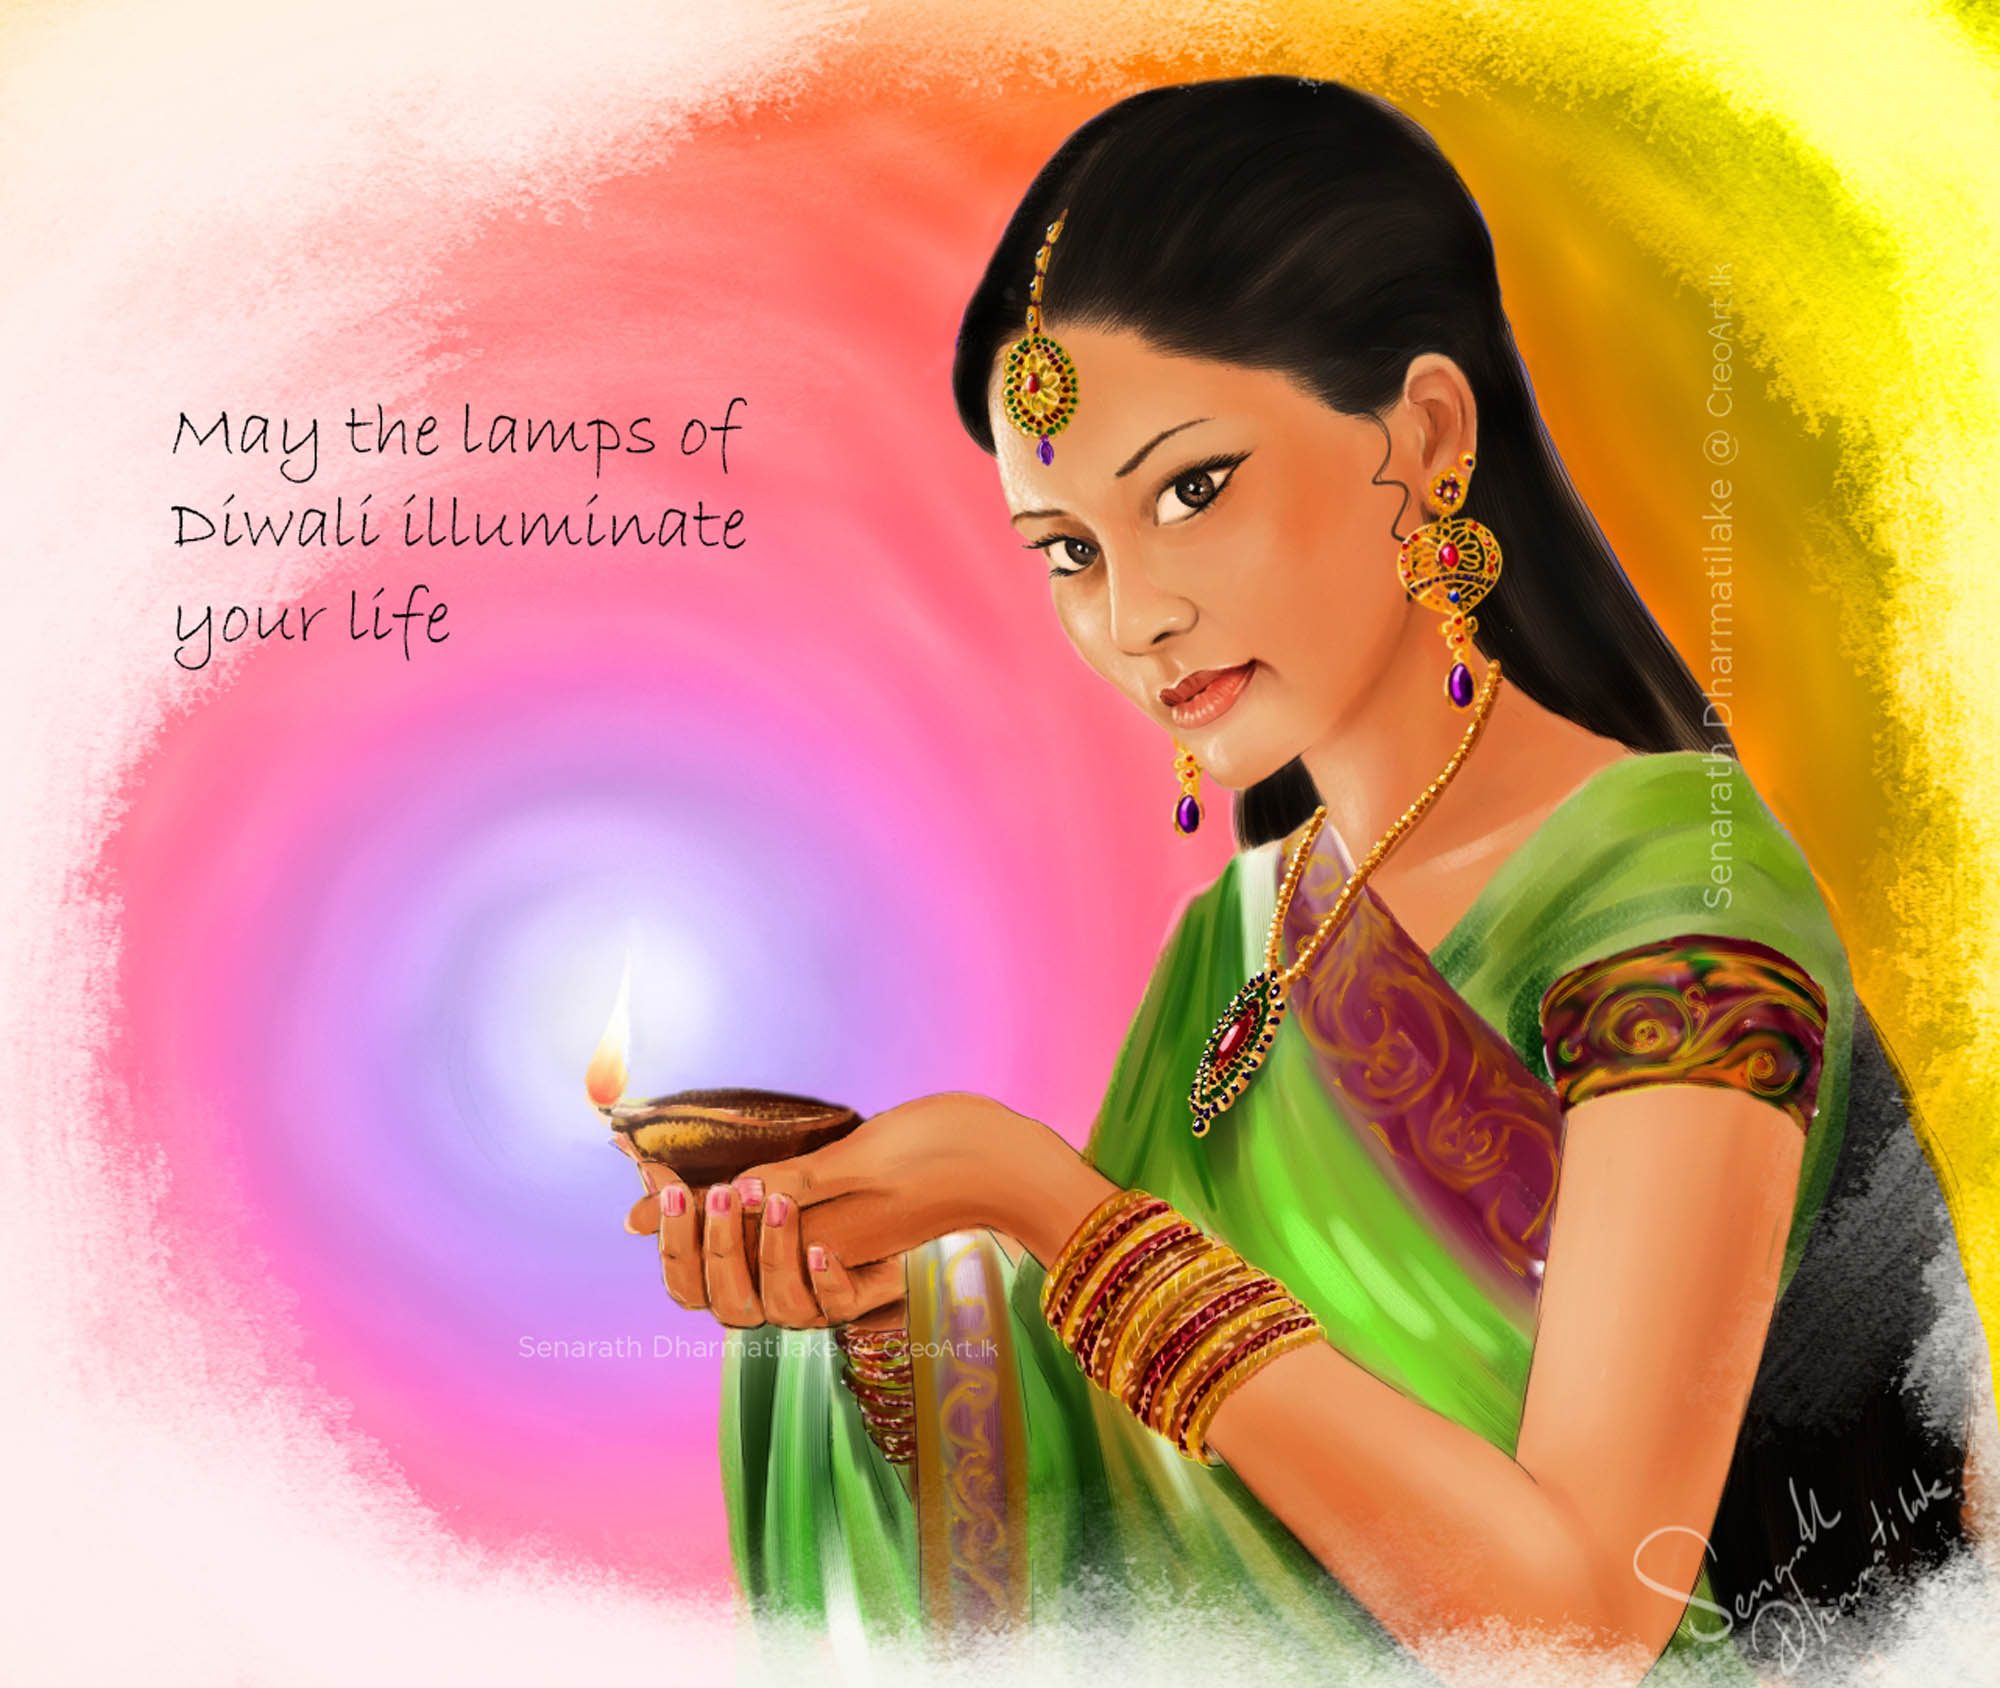 Wish You A Very Happy Diwali